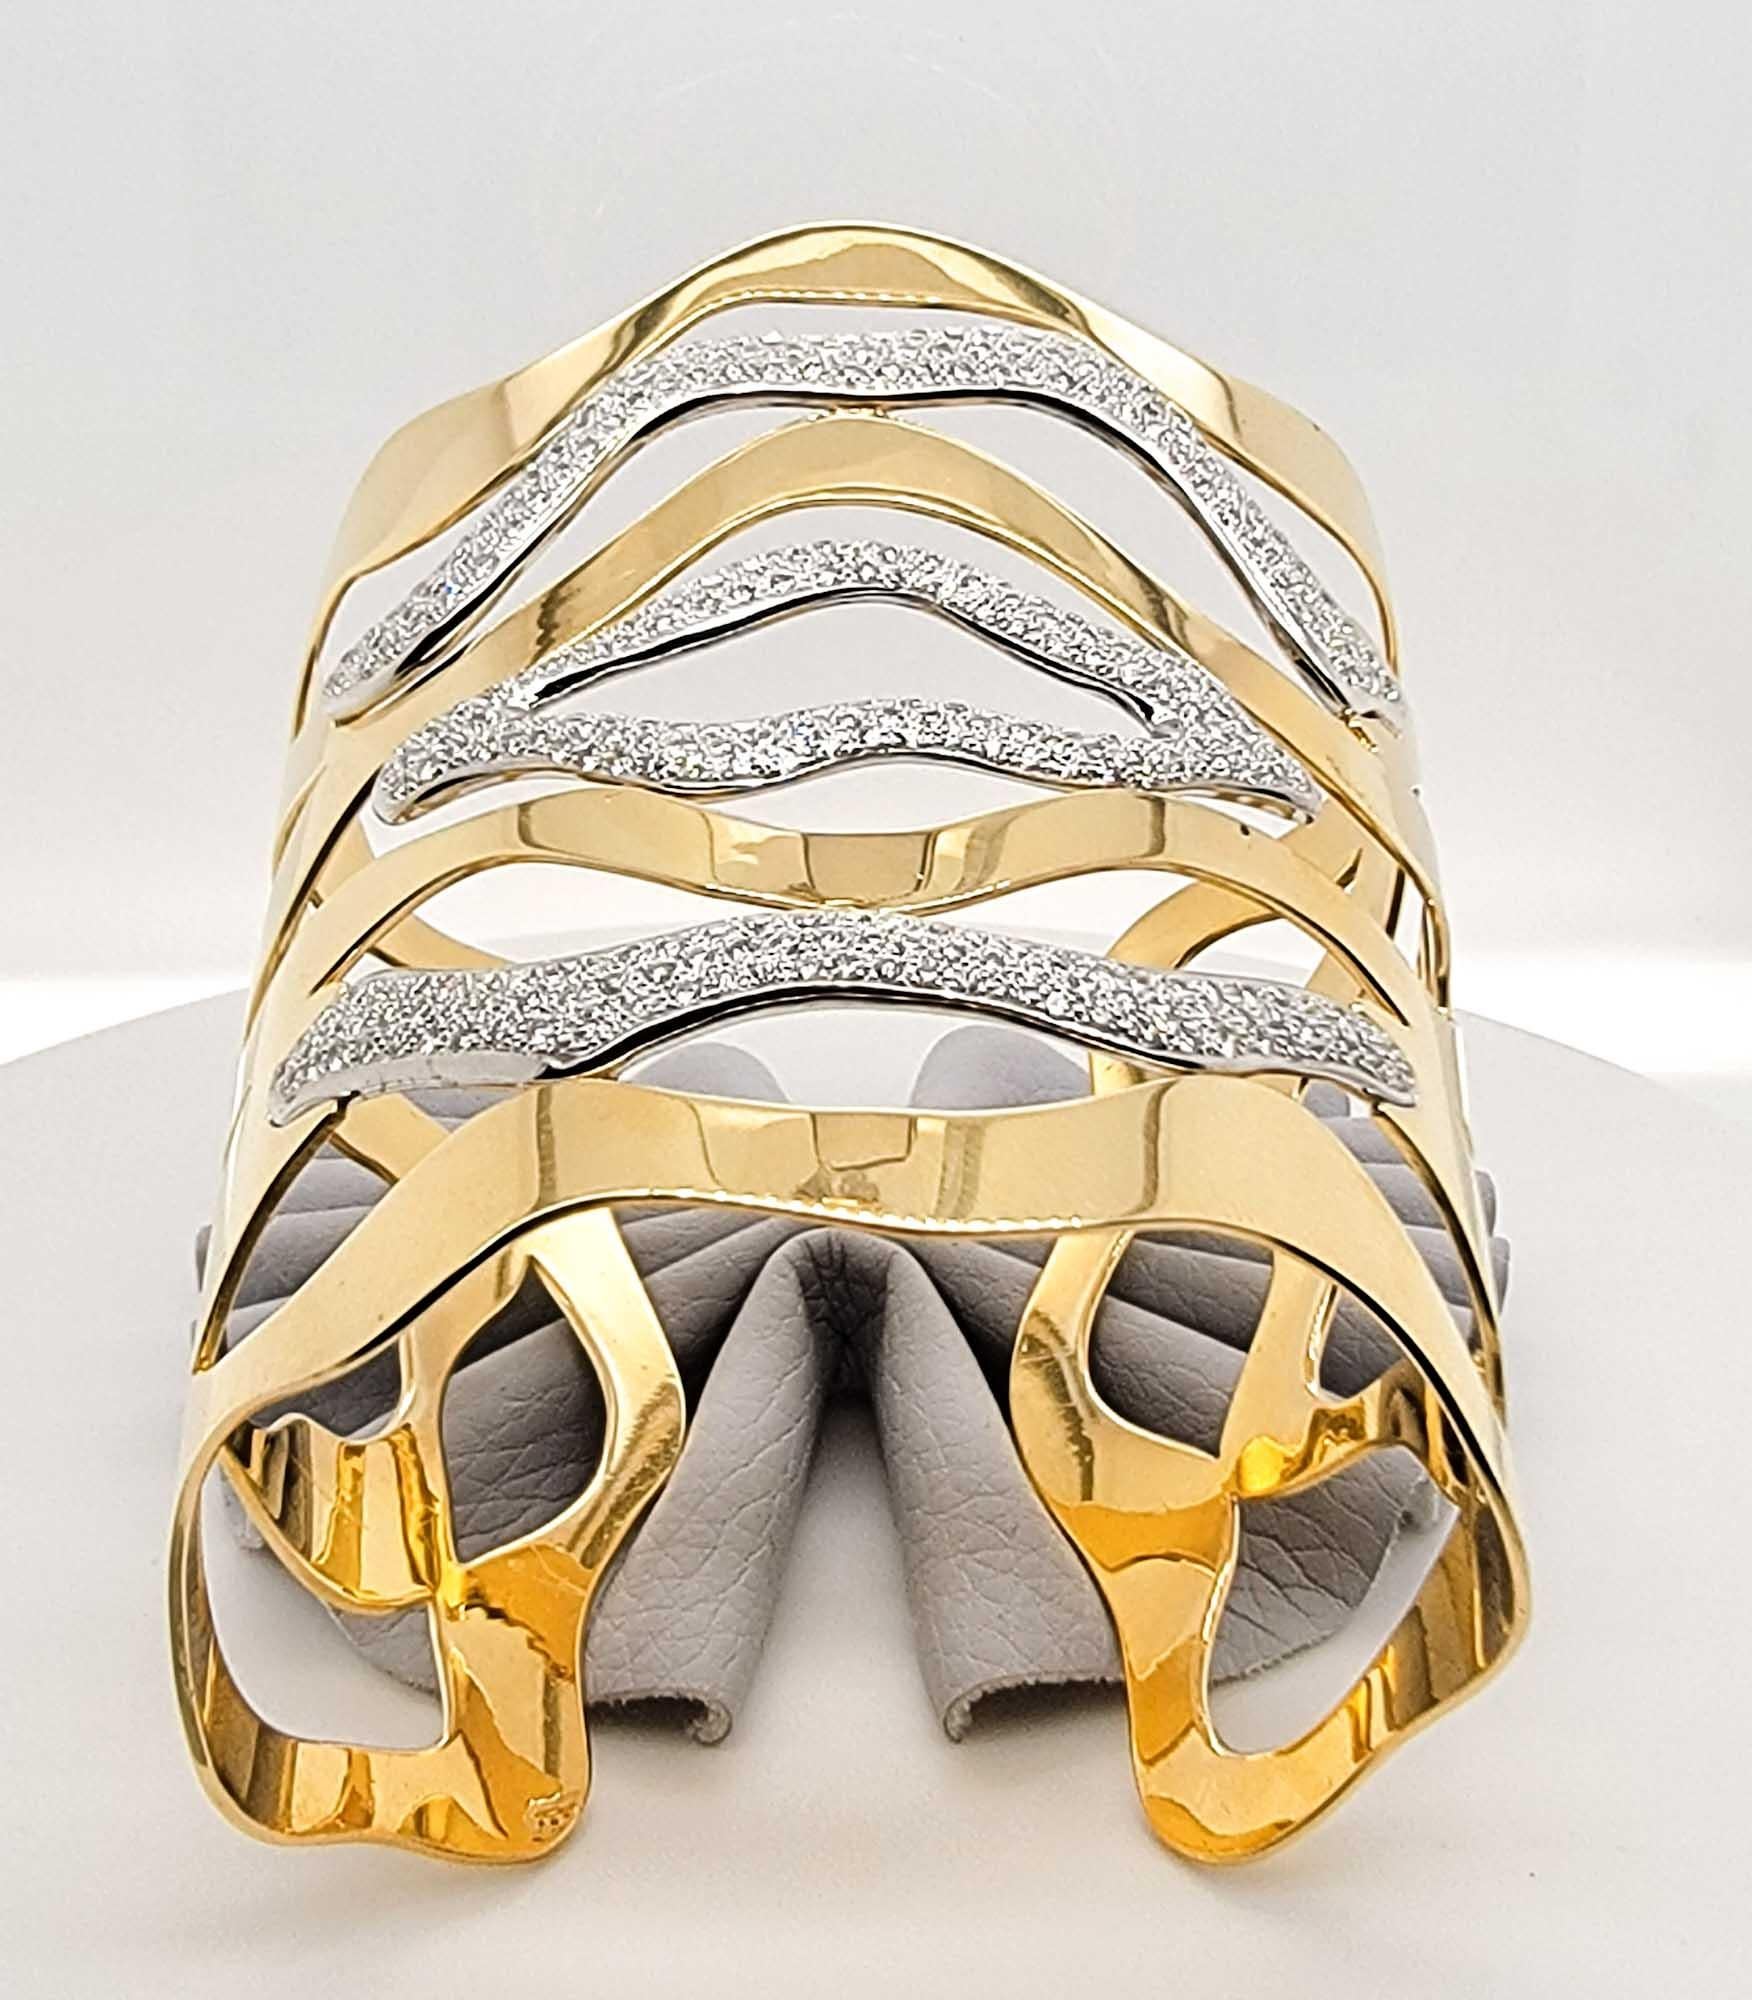 Dieser schöne Armreif aus 18 Karat Gelbgold hat Diamanten mit einem Gesamtgewicht von 3 Karat.

Sophia D von Joseph Dardashti LTD ist seit 35 Jahren weltweit bekannt und lässt sich vom klassischen Art-Déco-Design inspirieren, das mit modernen